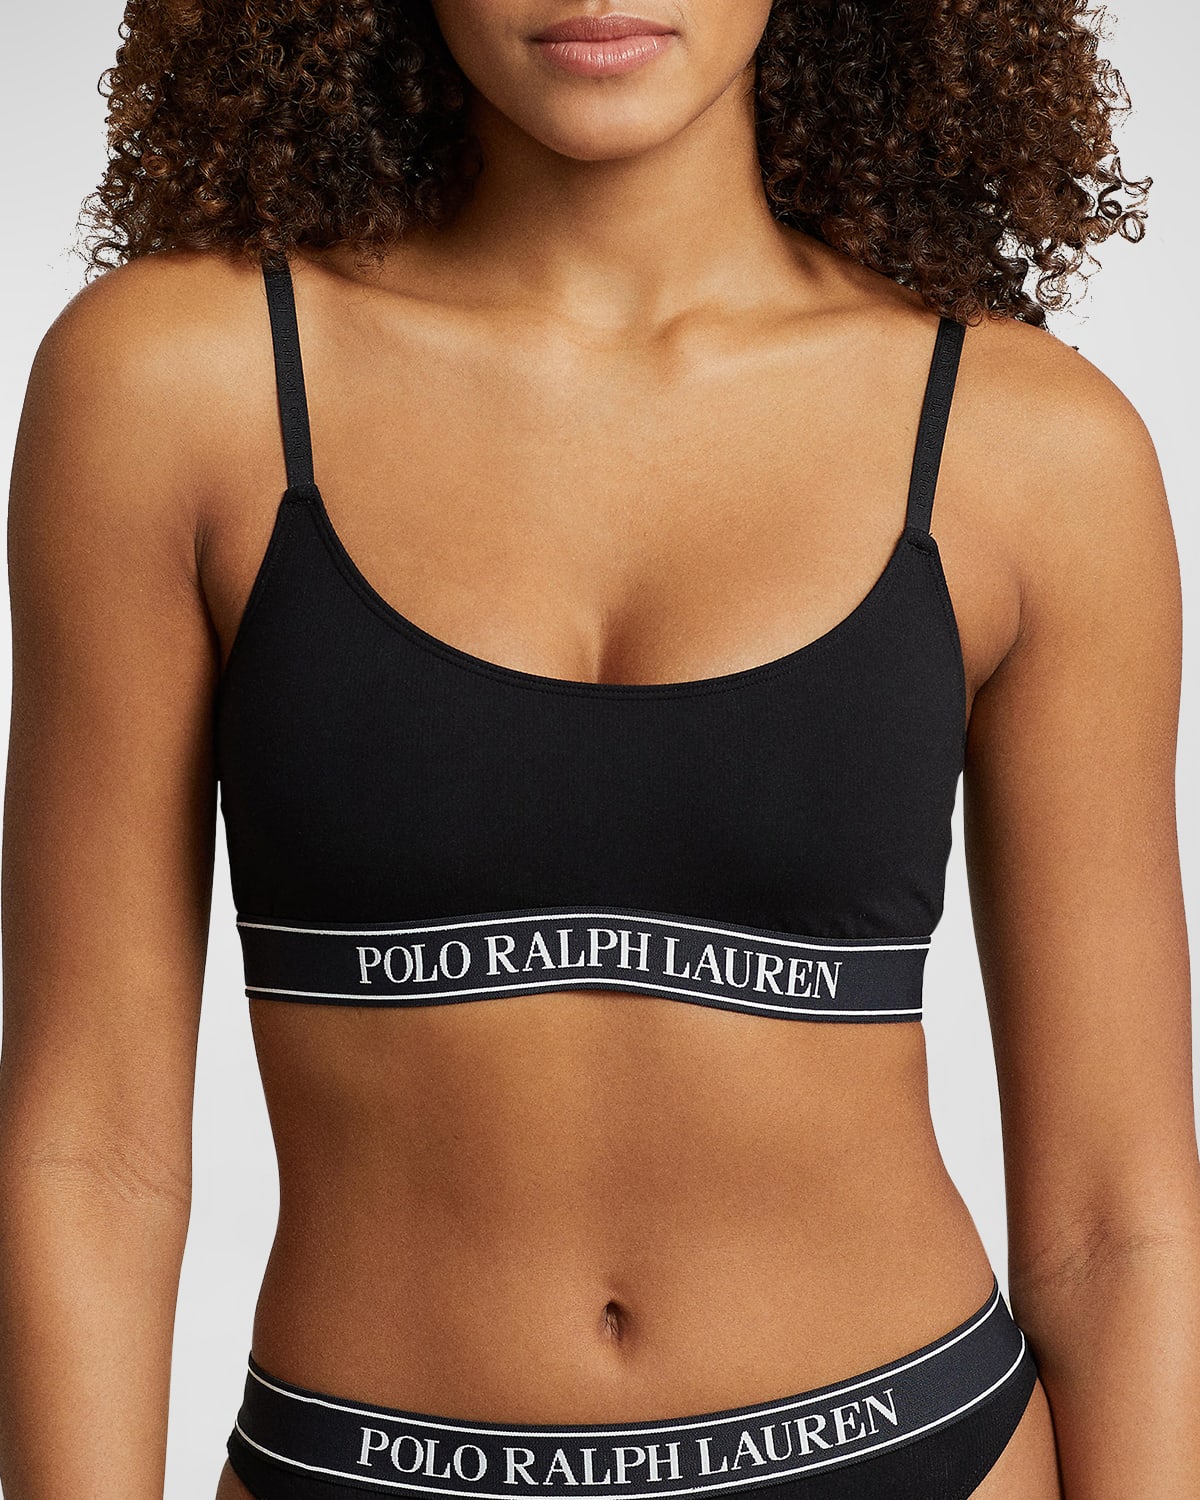 Polo Ralph Lauren Women's Essentials Scoop Bralette In Onyx